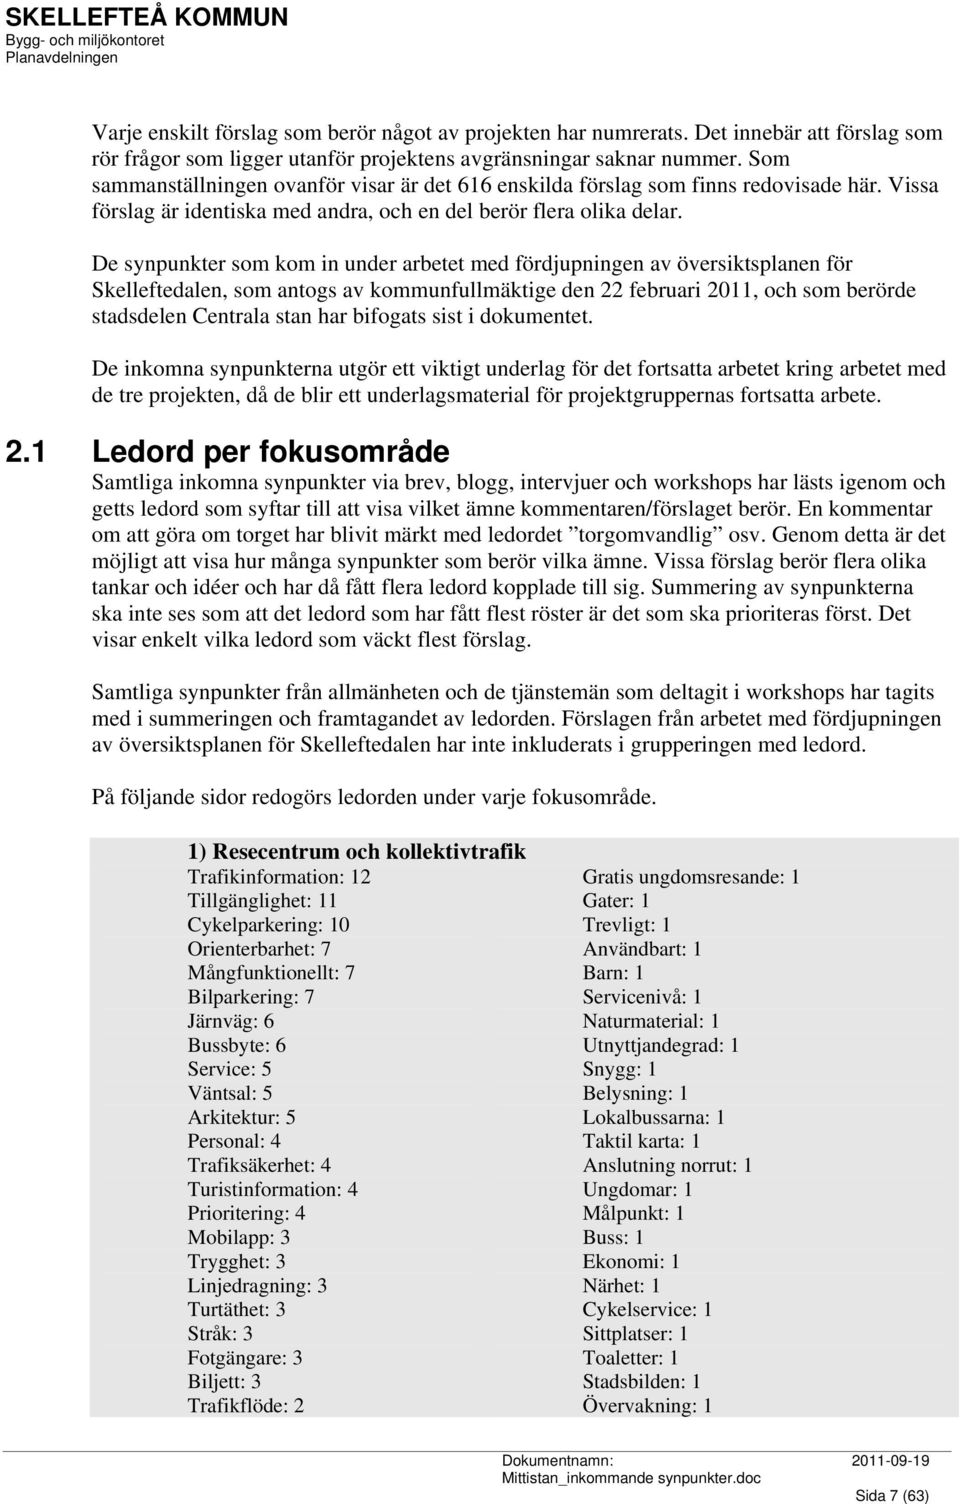 De synpunkter som kom in under arbetet med fördjupningen av översiktsplanen för Skelleftedalen, som antogs av kommunfullmäktige den 22 februari 2011, och som berörde stadsdelen Centrala stan har